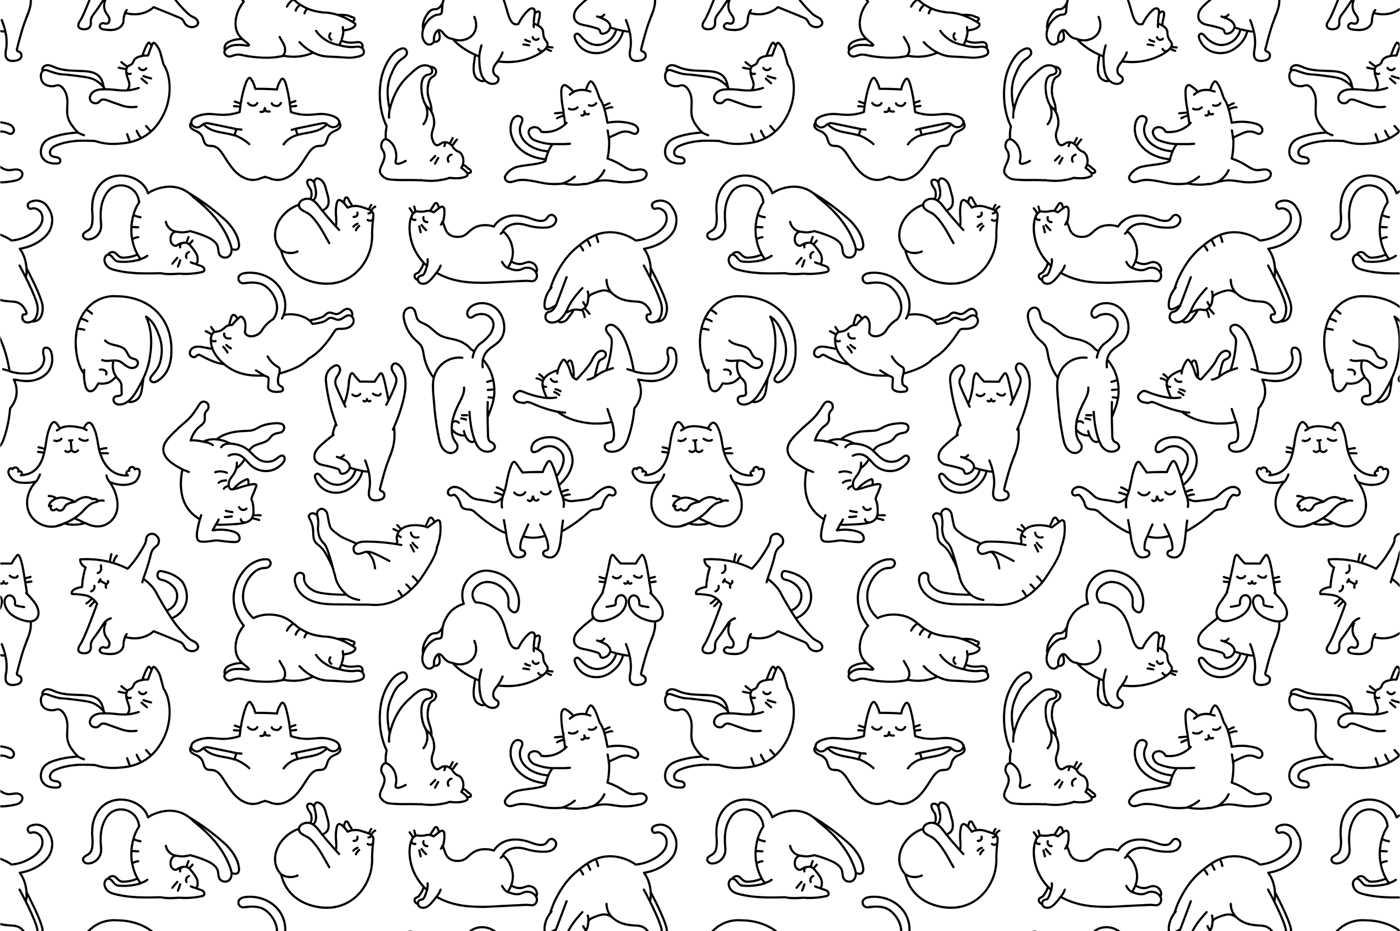 Cat feline pattern Yoga fitness exercise sport zen meditation namaste